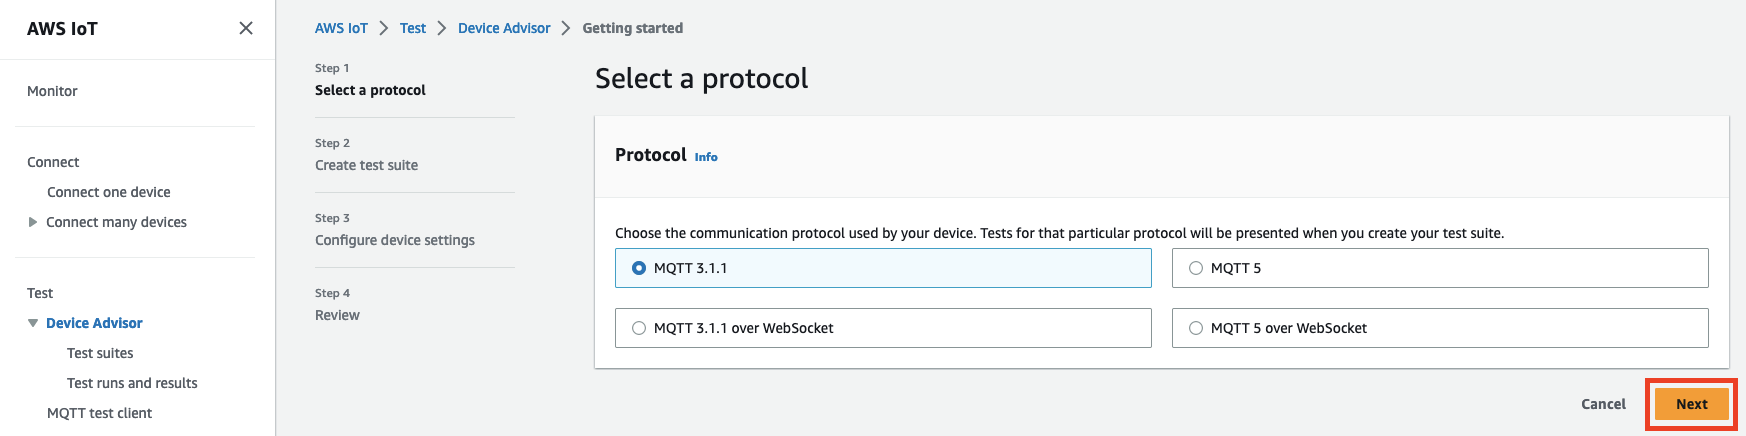 Interface Device Advisor affichant les options permettant de sélectionner un protocole de communication (MQTT 3.1.1, MQTT 3.1.1 over WebSocket, MQTT 5 over) WebSocket pour tester un appareil IoT.